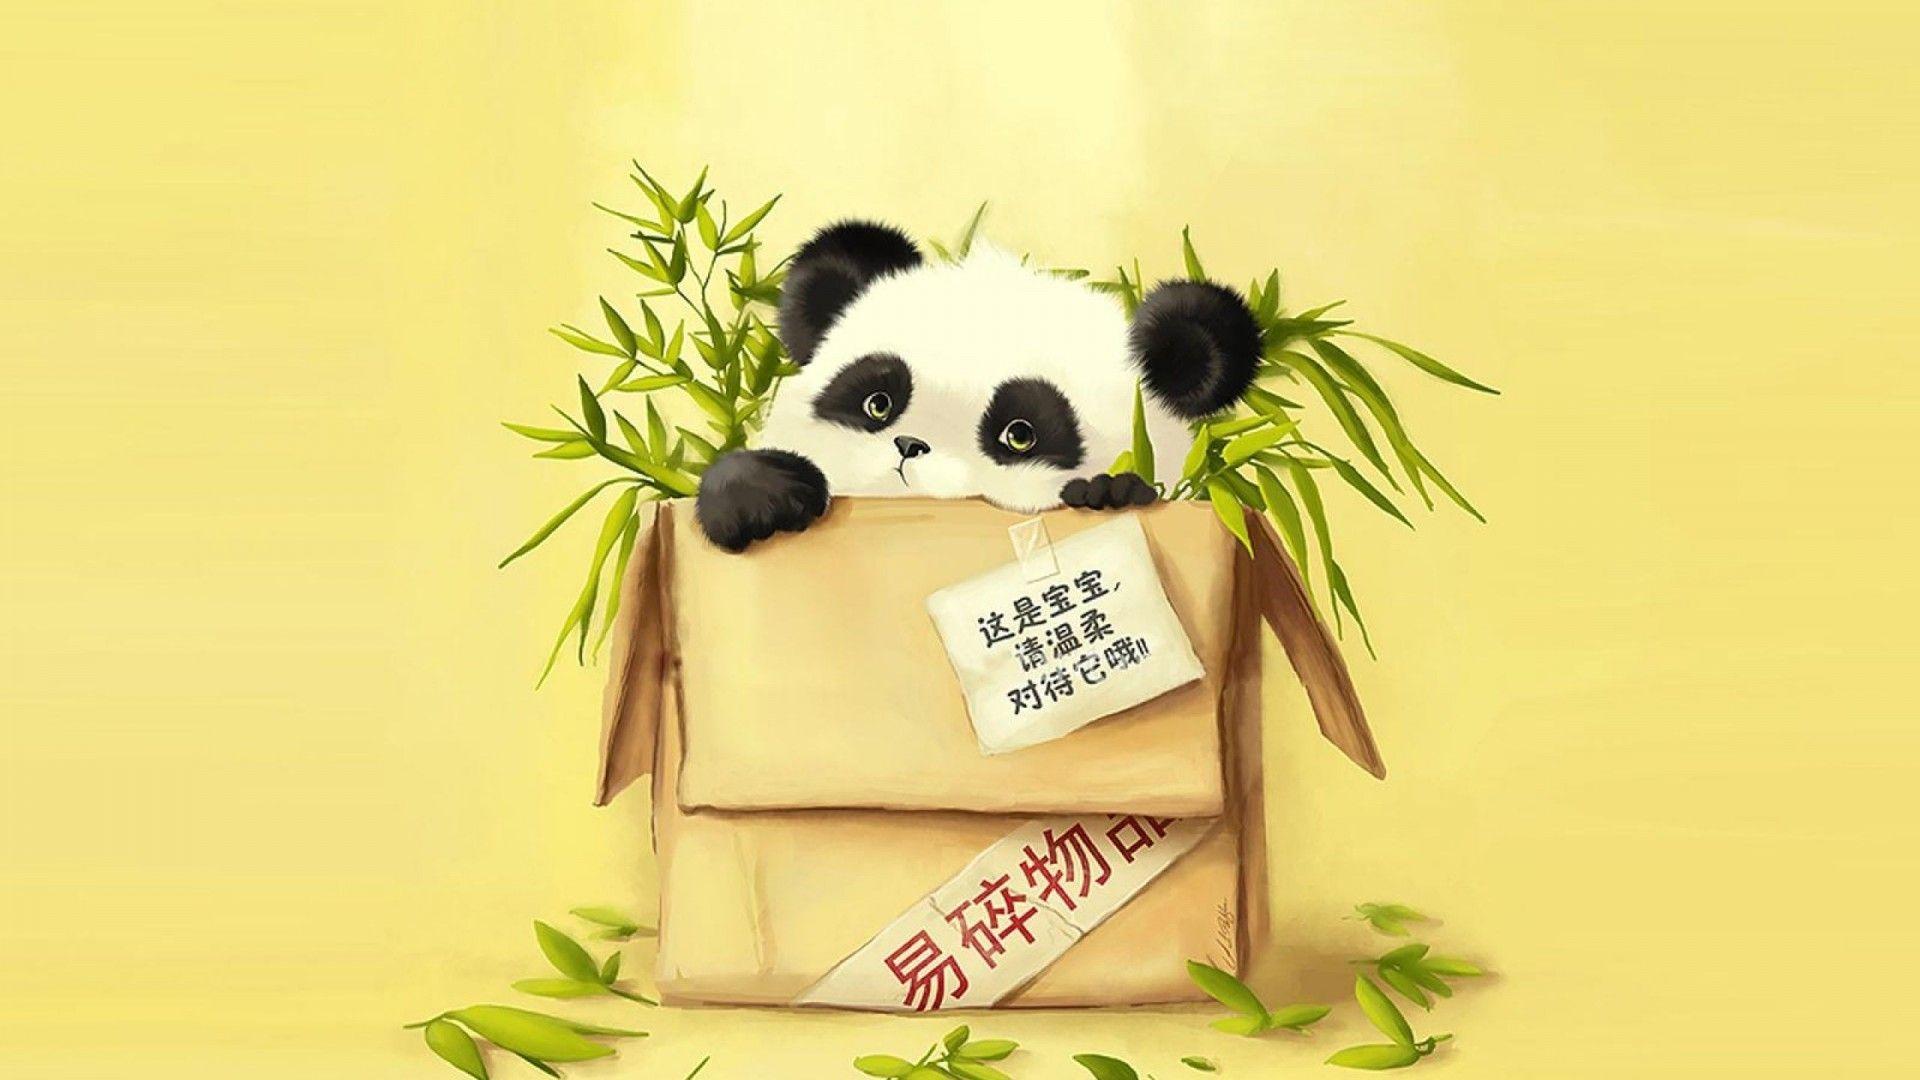 Cute Panda Drawing Tumblr.com